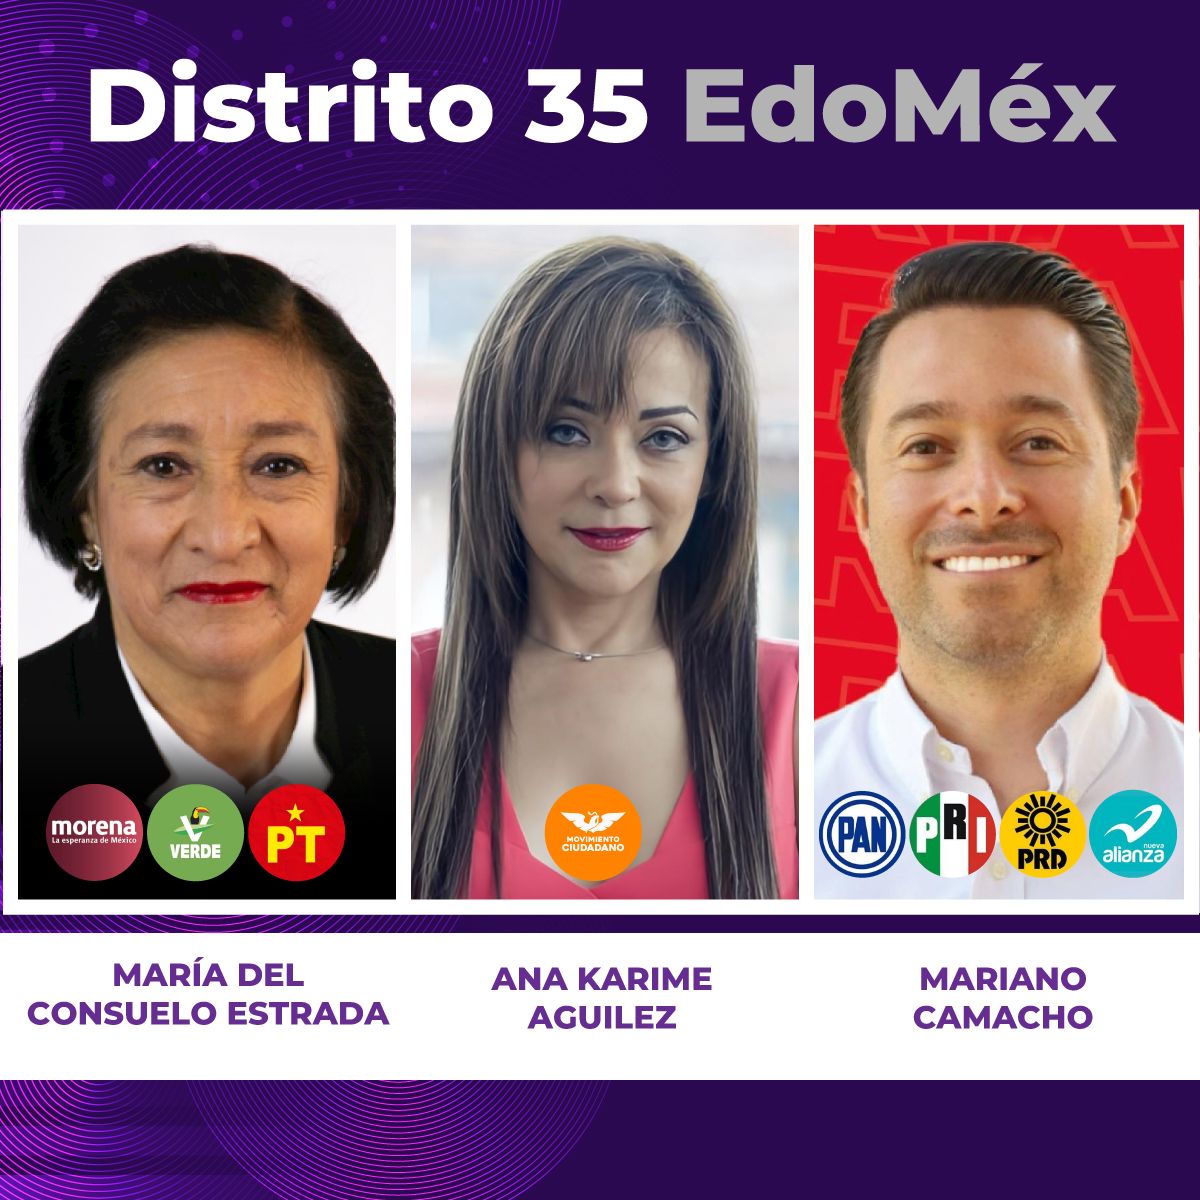 Mariano Camacho y la Alianza PRI-PAN-PRD-NA lidera encuesta en el Distrito 35 del Estado de México.